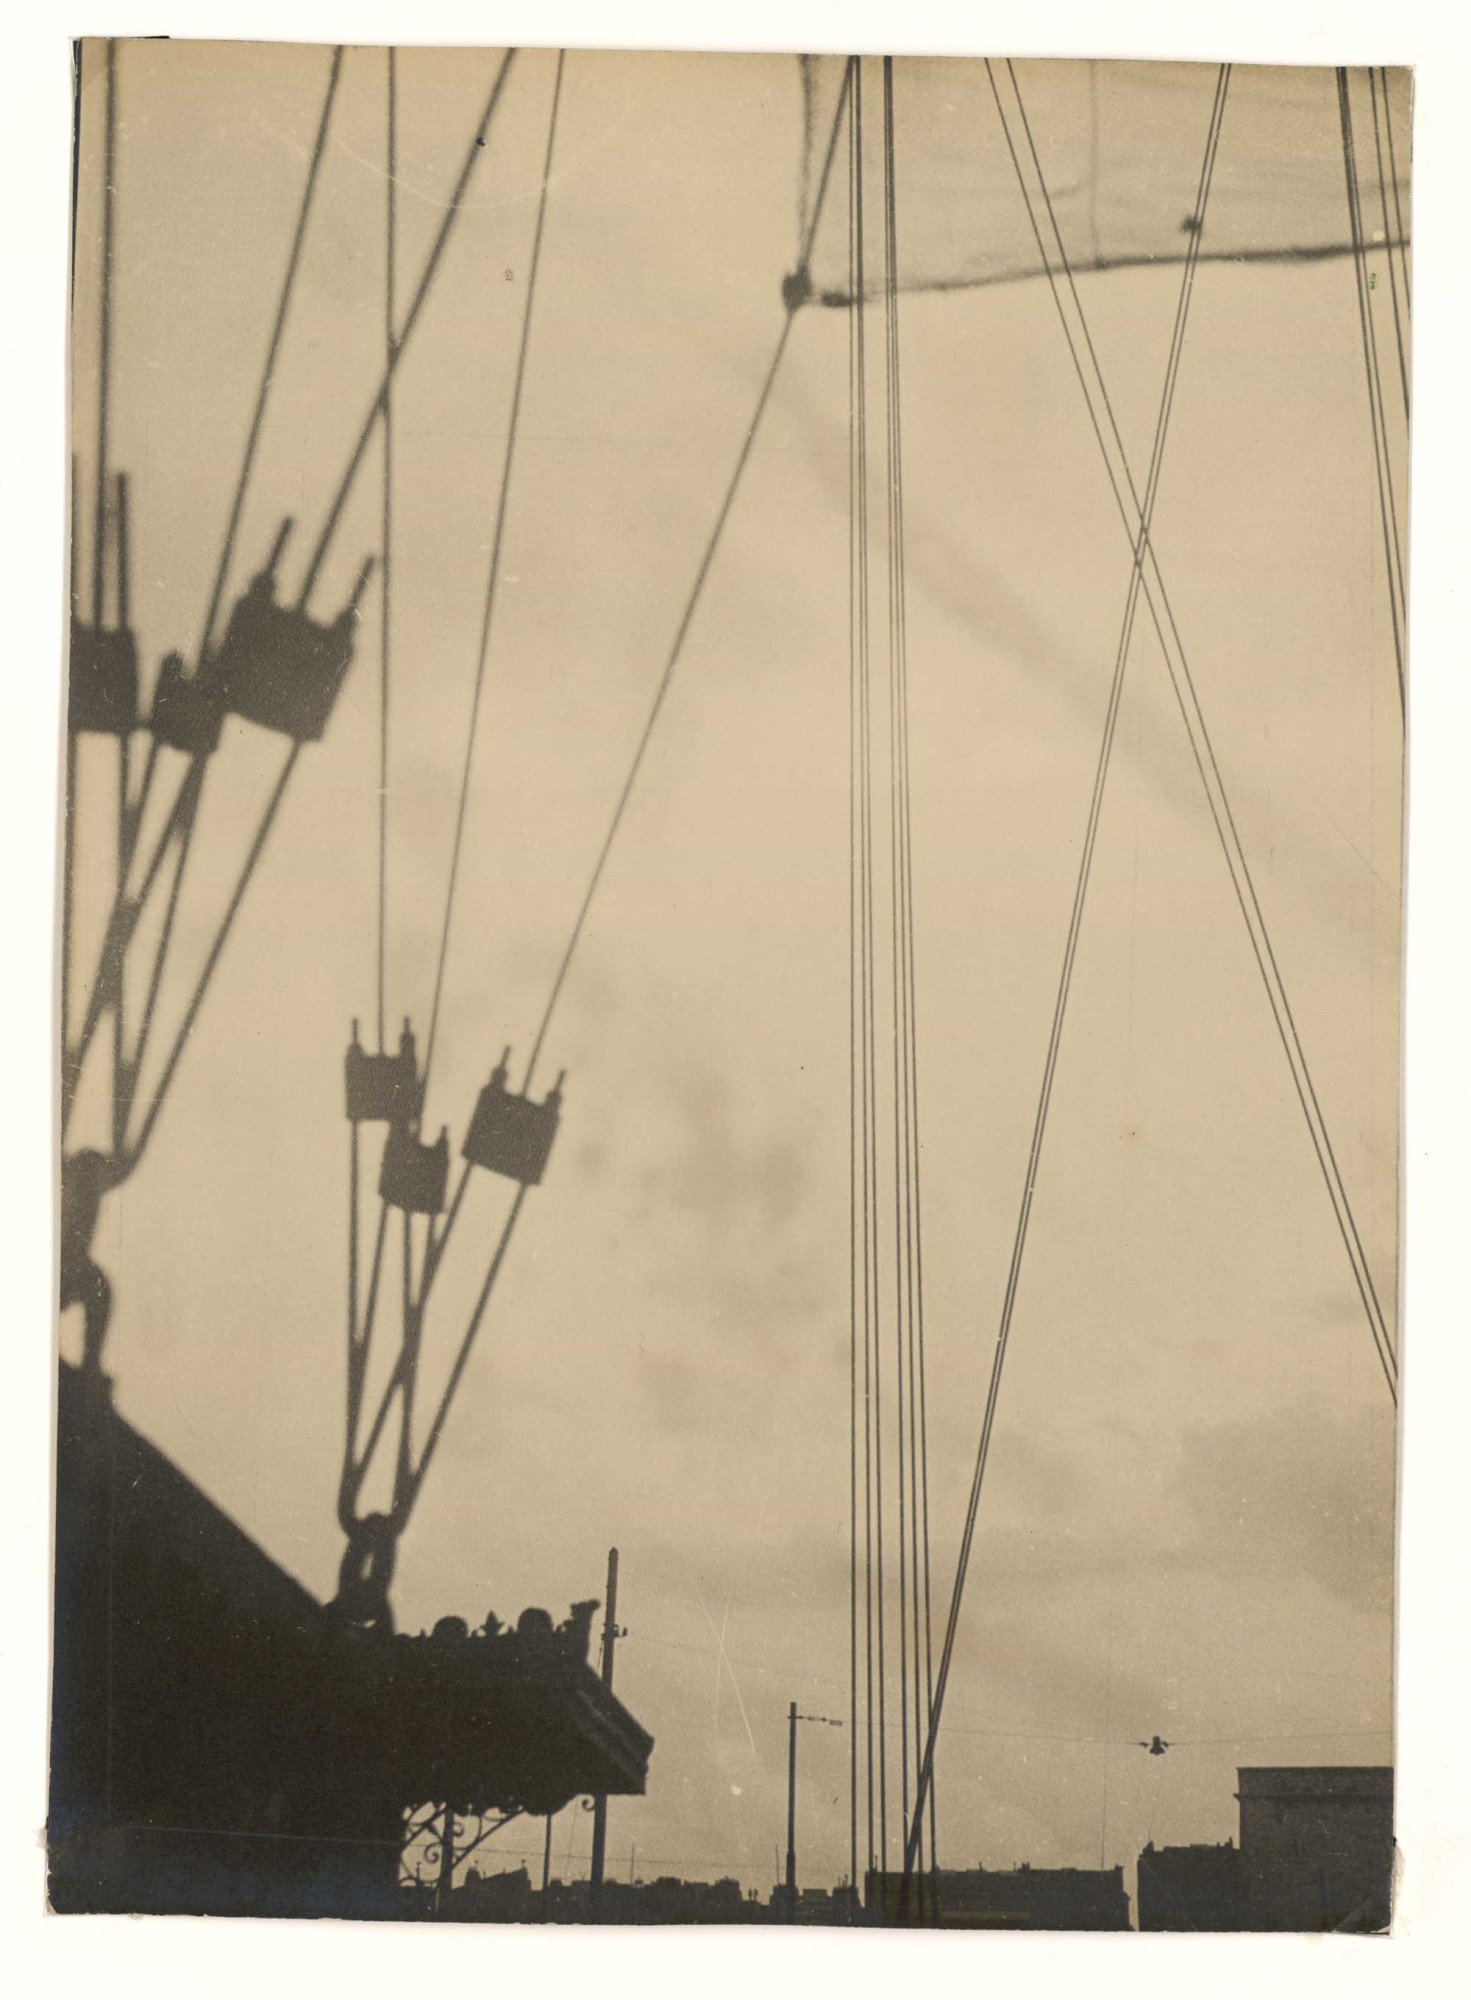 László Moholy-Nagy, Marseille, le pont transbordeur, 1929, musée Cantini, C.91.14